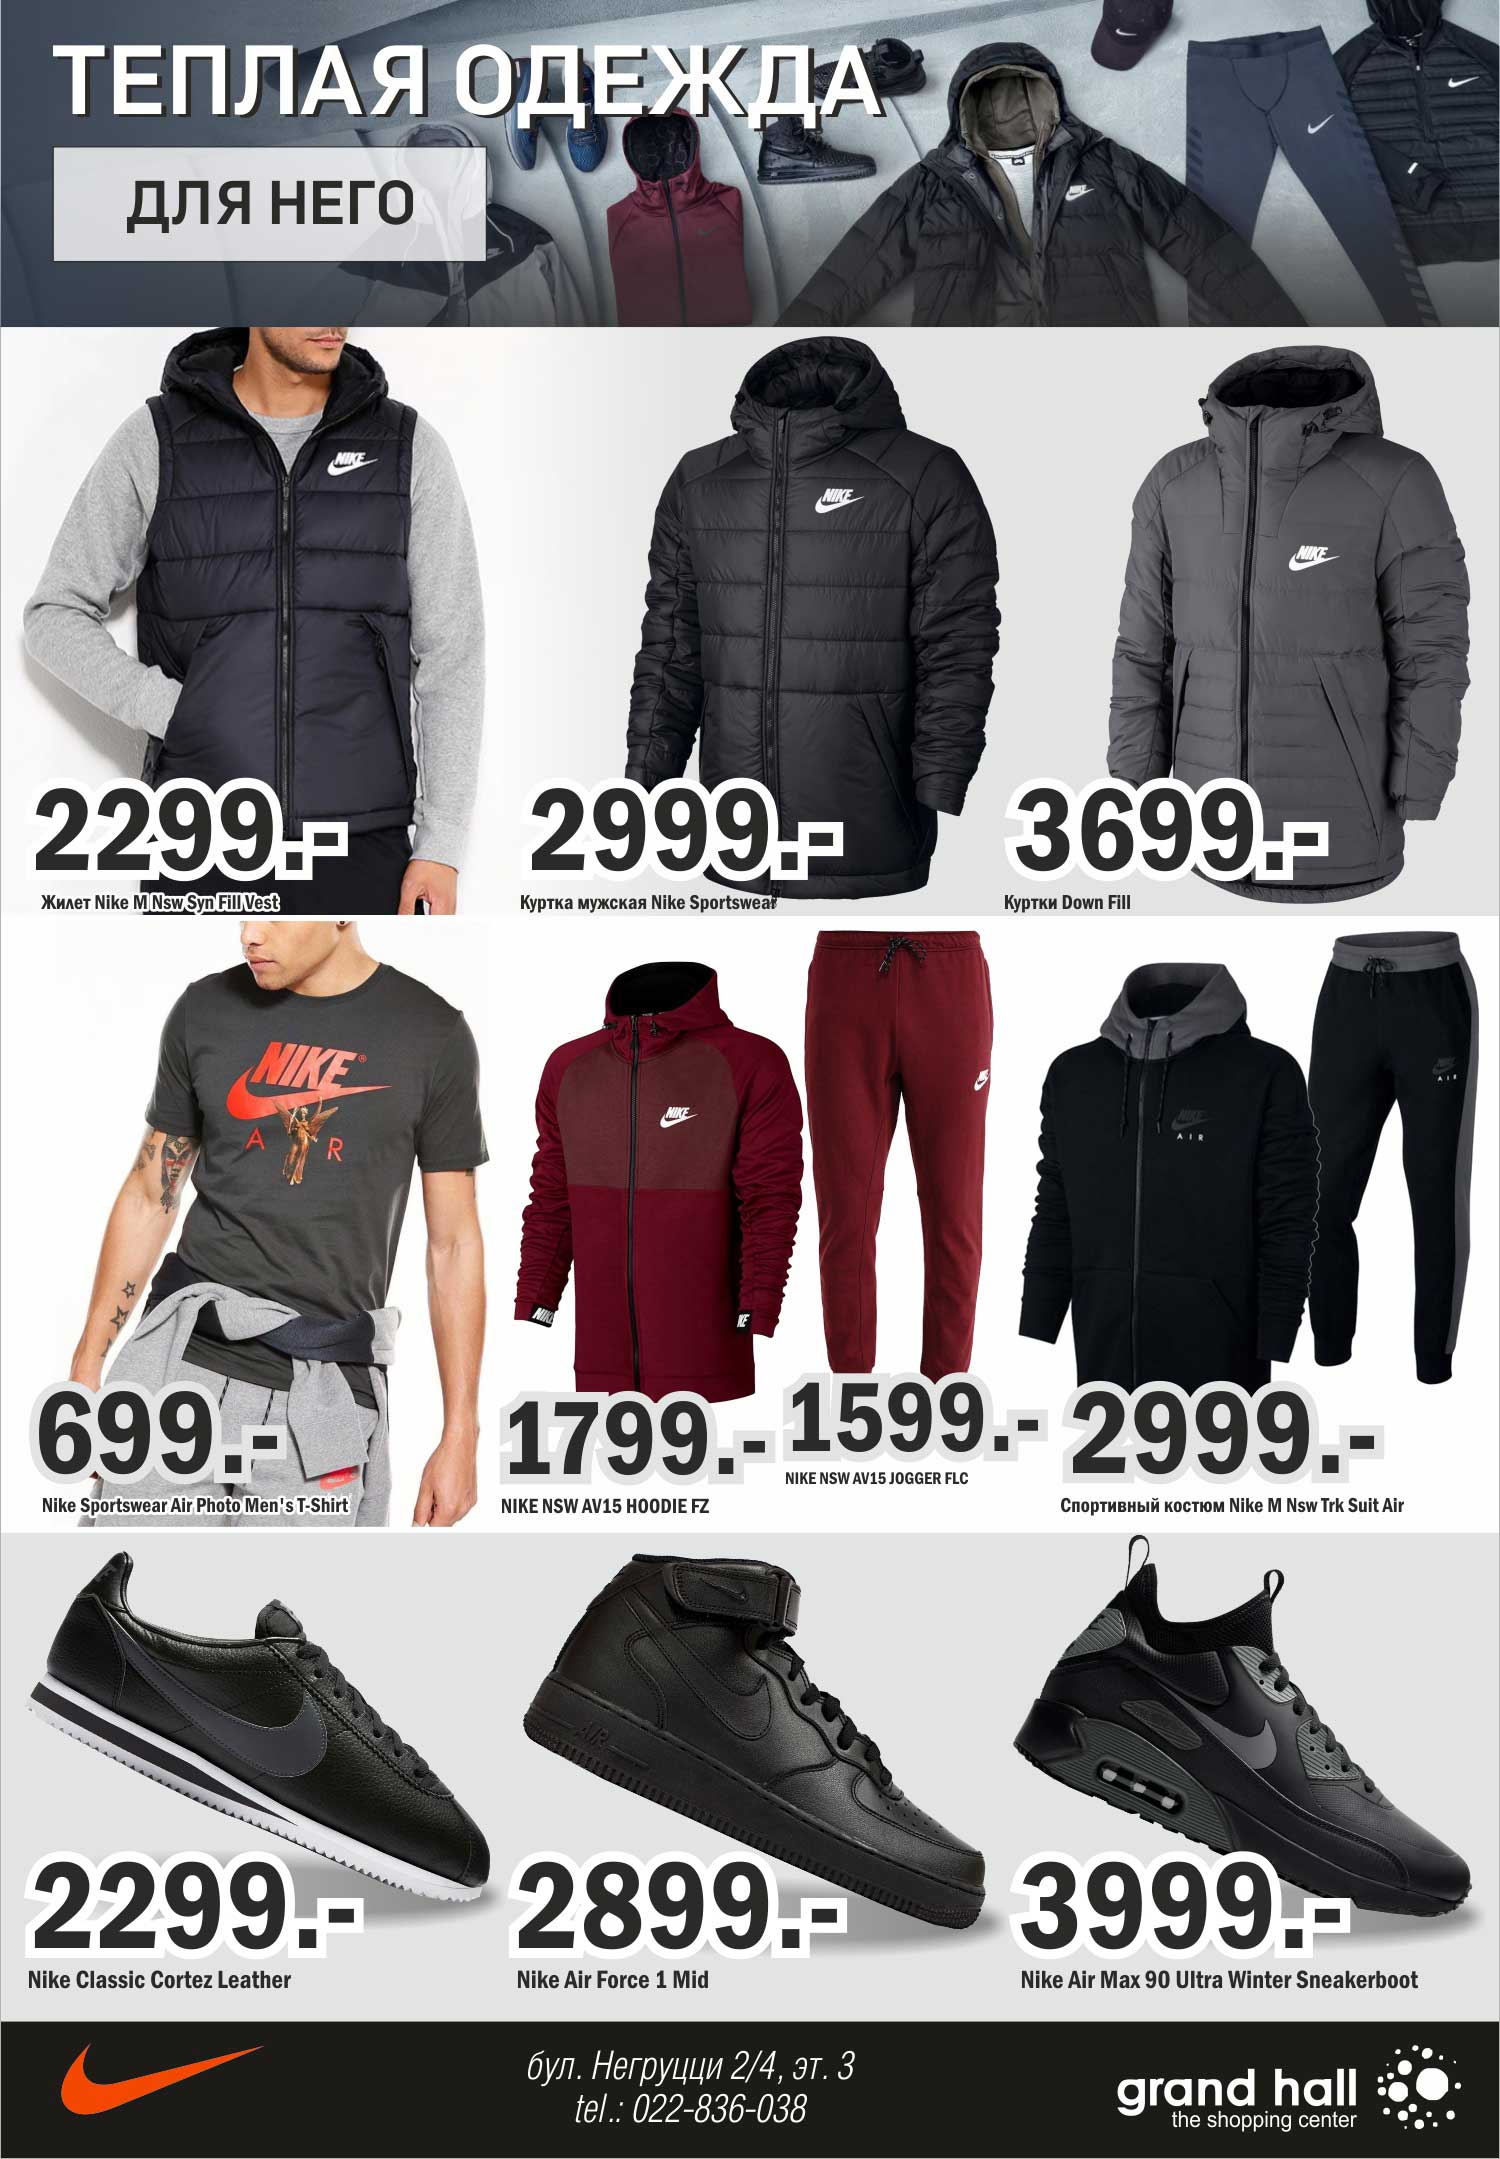 мужская зимняя одежда и обувь Nike